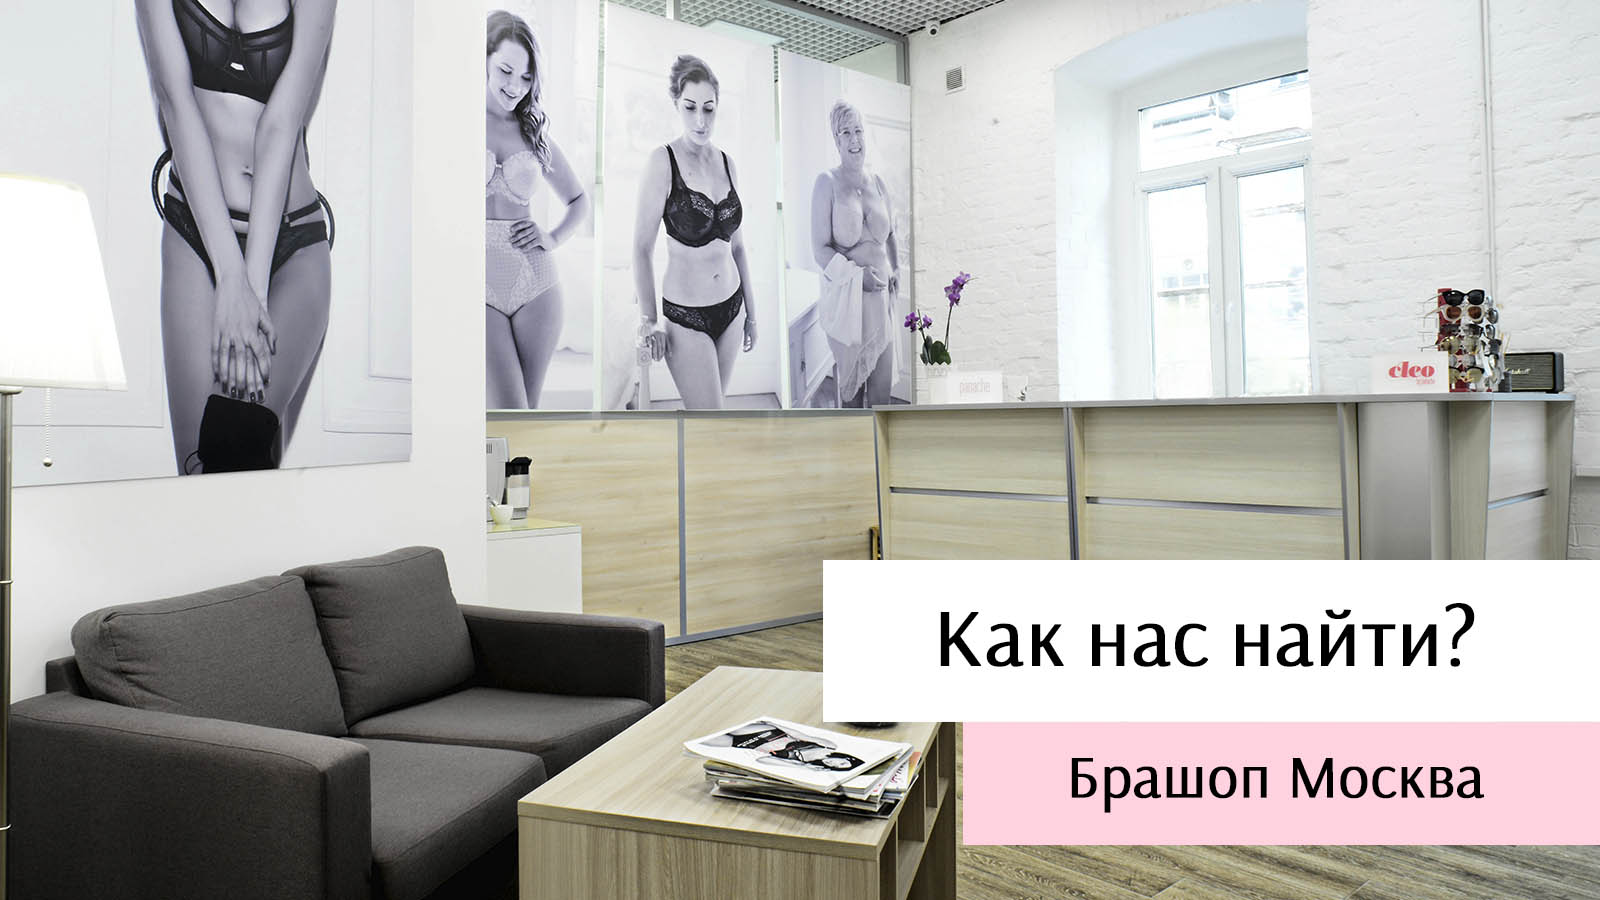 Секс шопы на Лужниках - Москва - адреса на карте, официальные сайты, часы работы